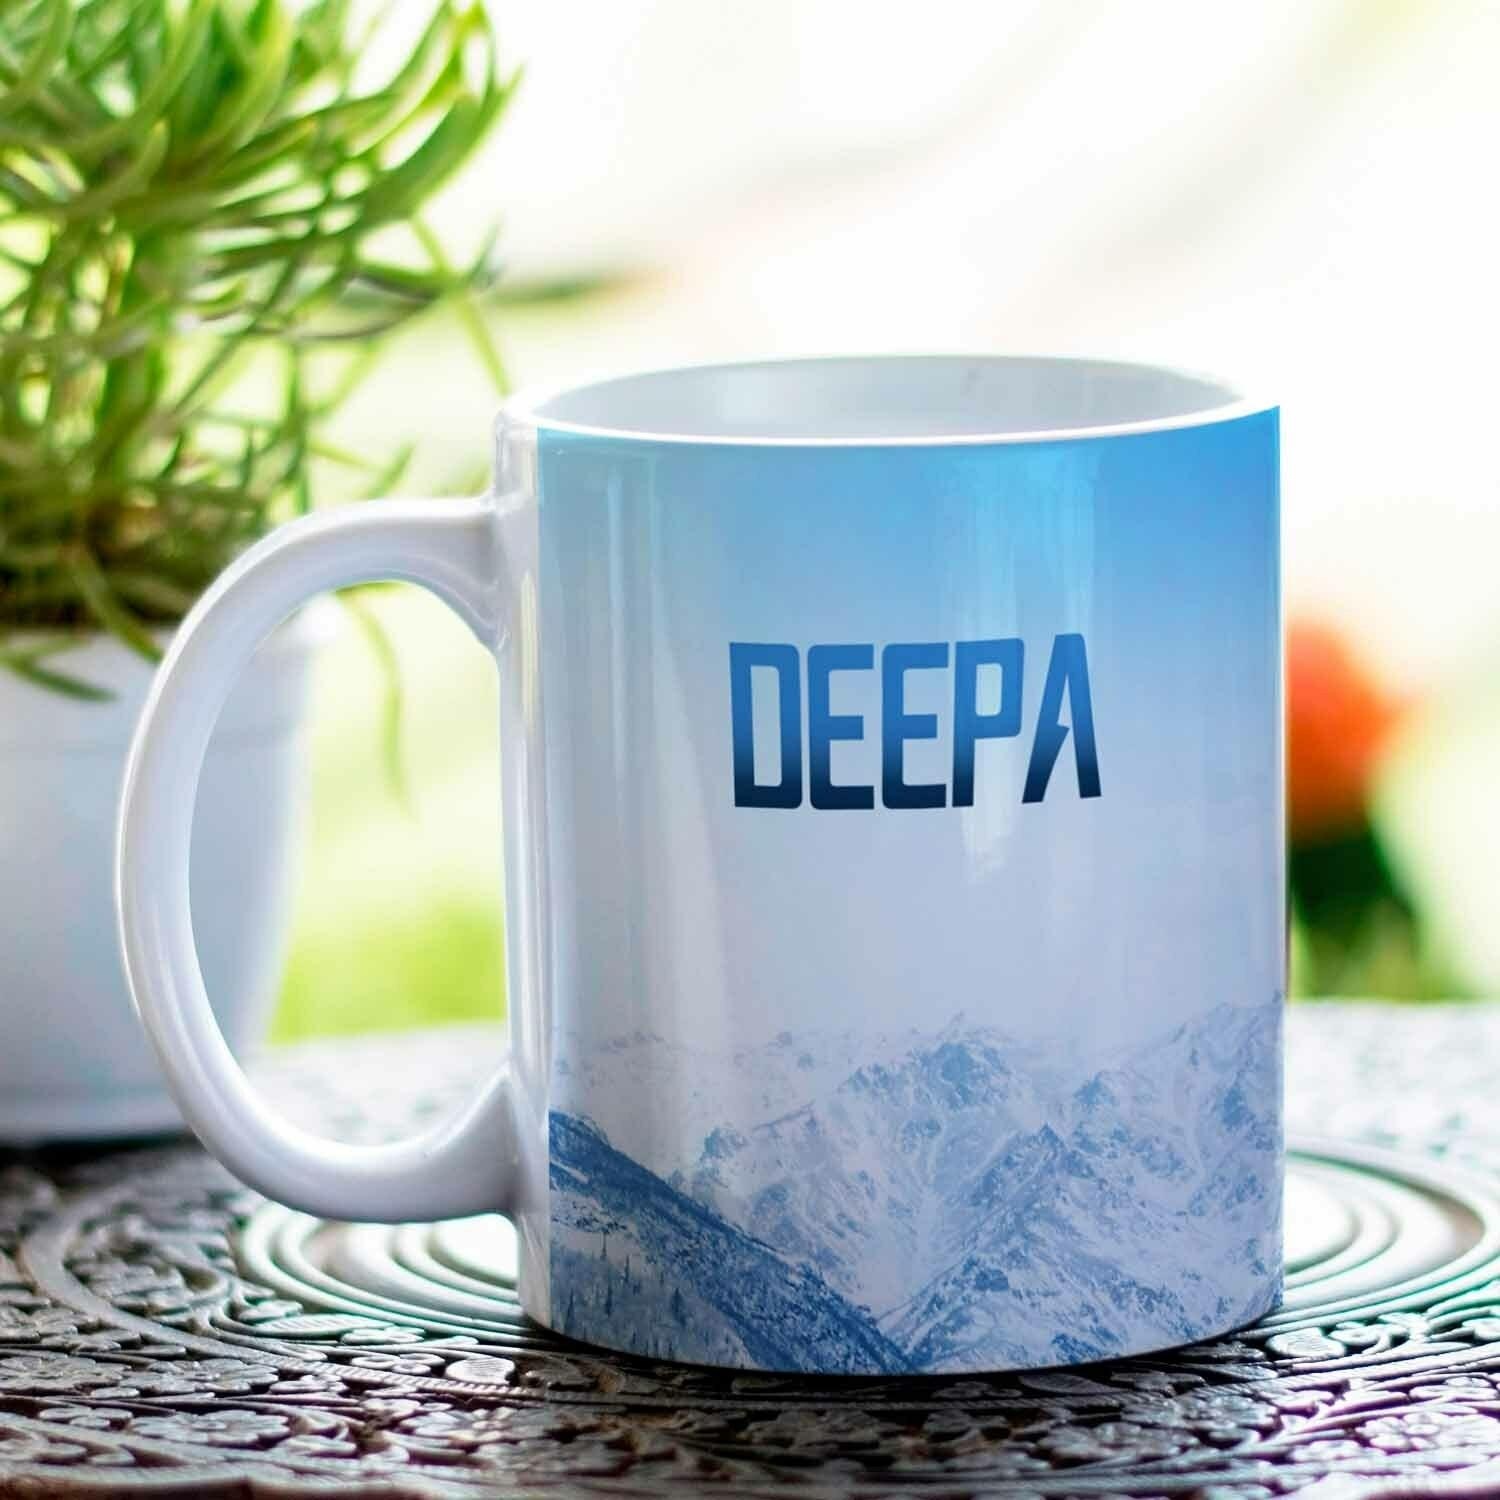 D Name Ka - Deepa Name - Mug